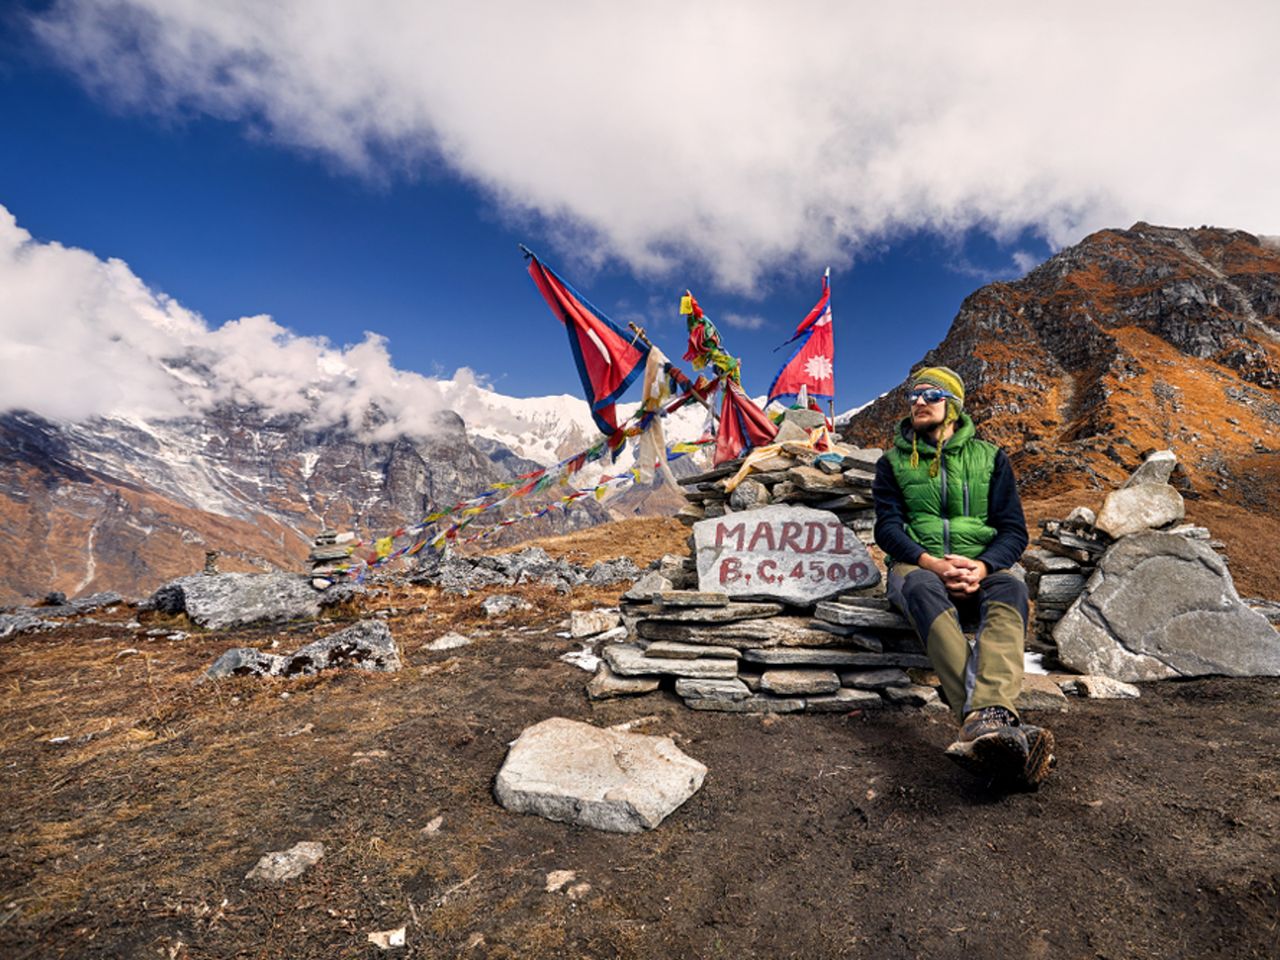 9-дневный поход к Марди Химал | Цена 820$, отзывы, описание экскурсии